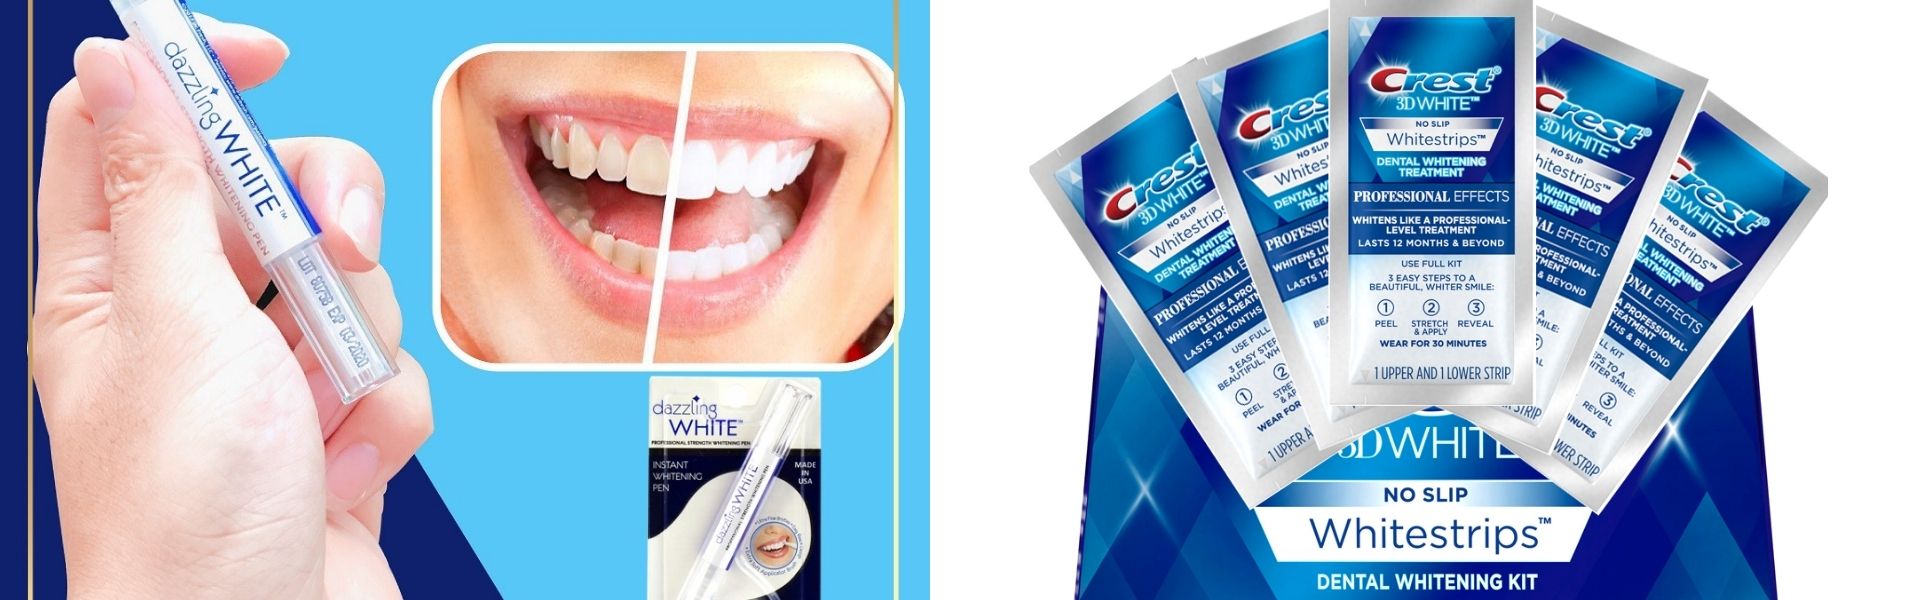 Bút tẩy trắng răng chính hãng tại thiết bị chính hãng CE